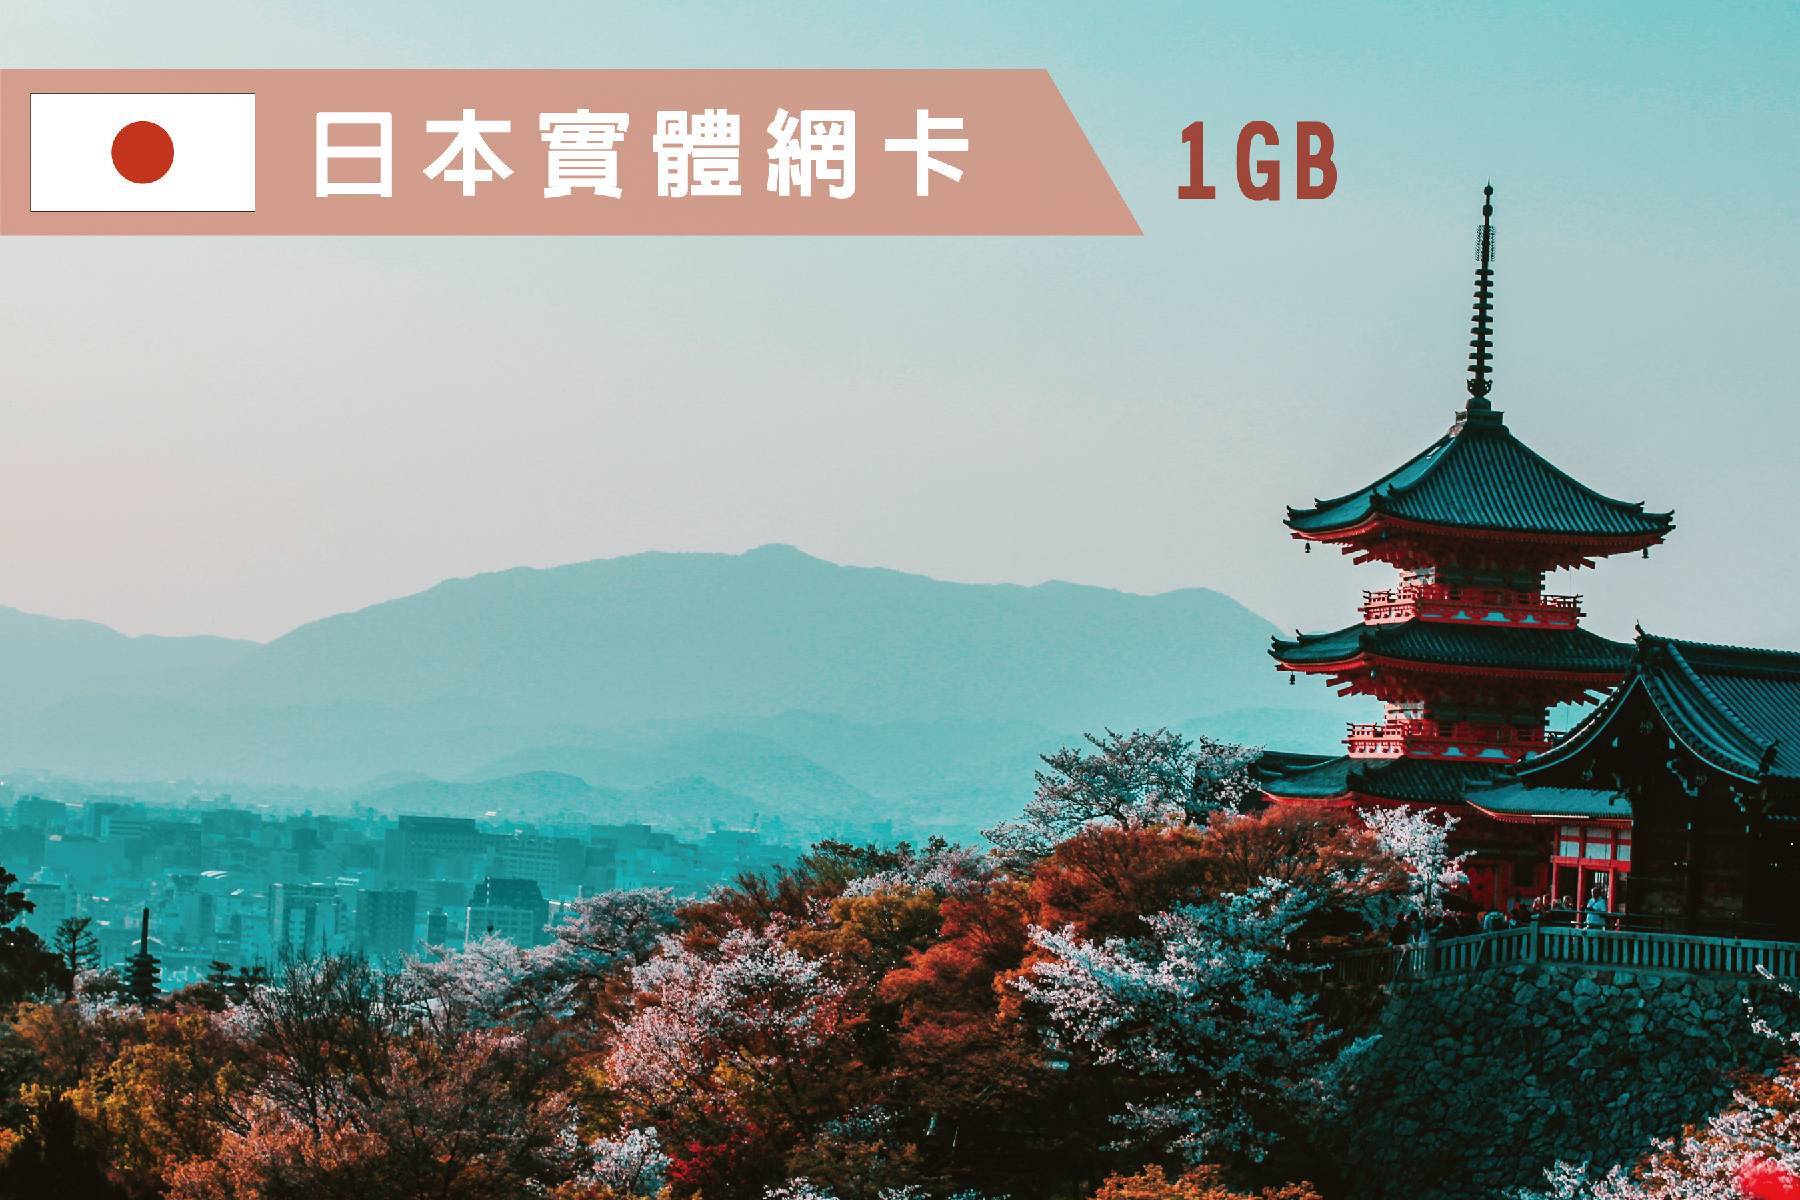 Ⓨ日本-3天每日1GB超過降速吃到飽上網卡1